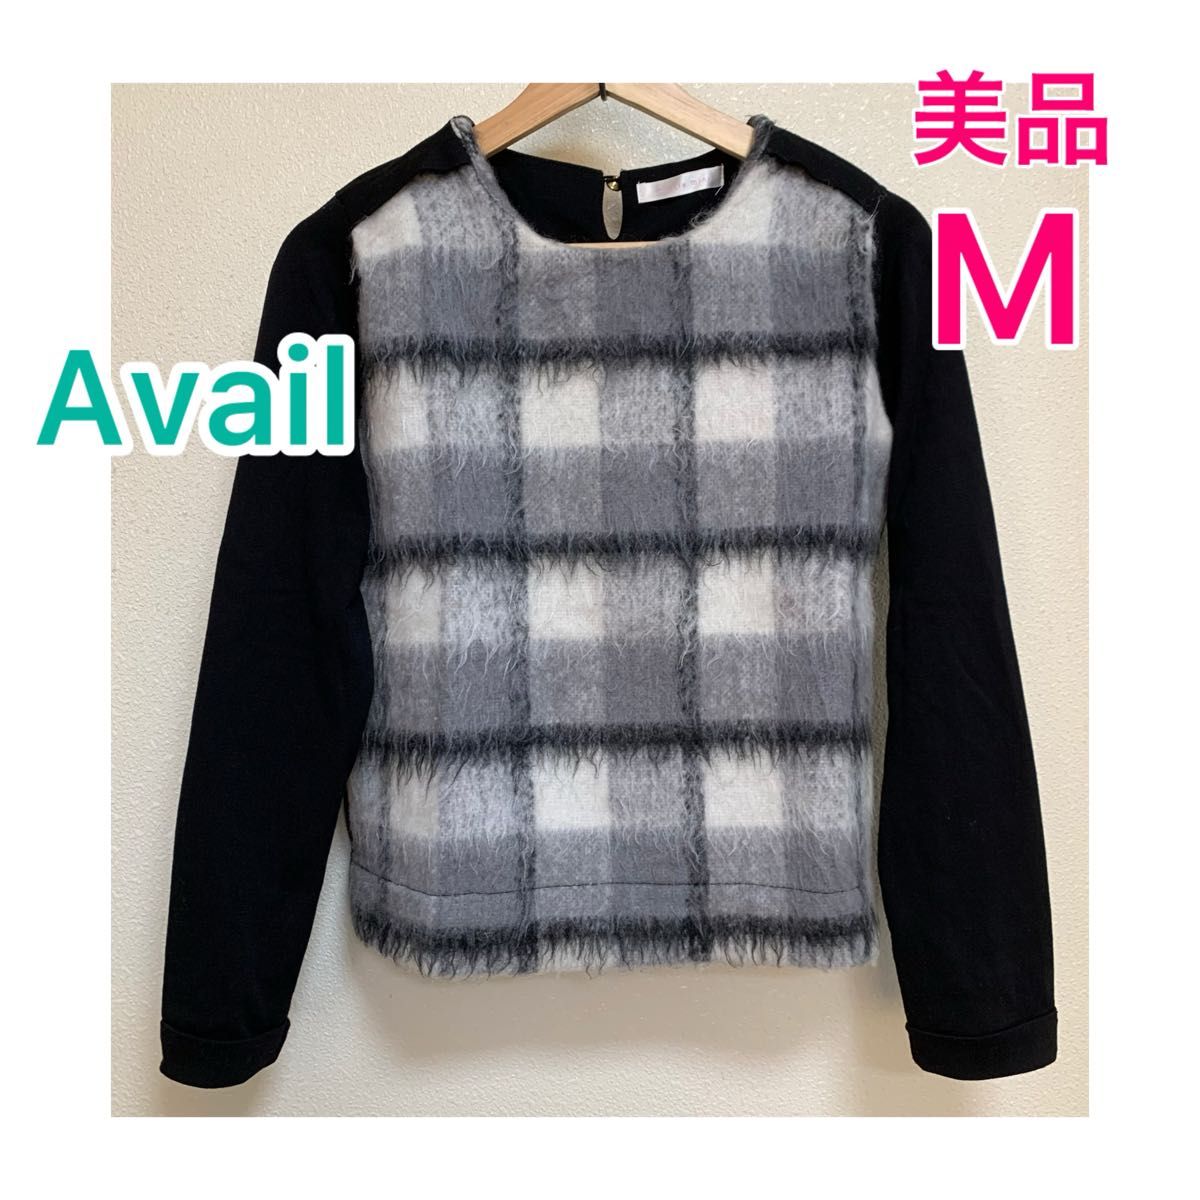 【美品】Availアベイル/チェック柄 シャギー トップス☆Mサイズ ニット セーター 長袖